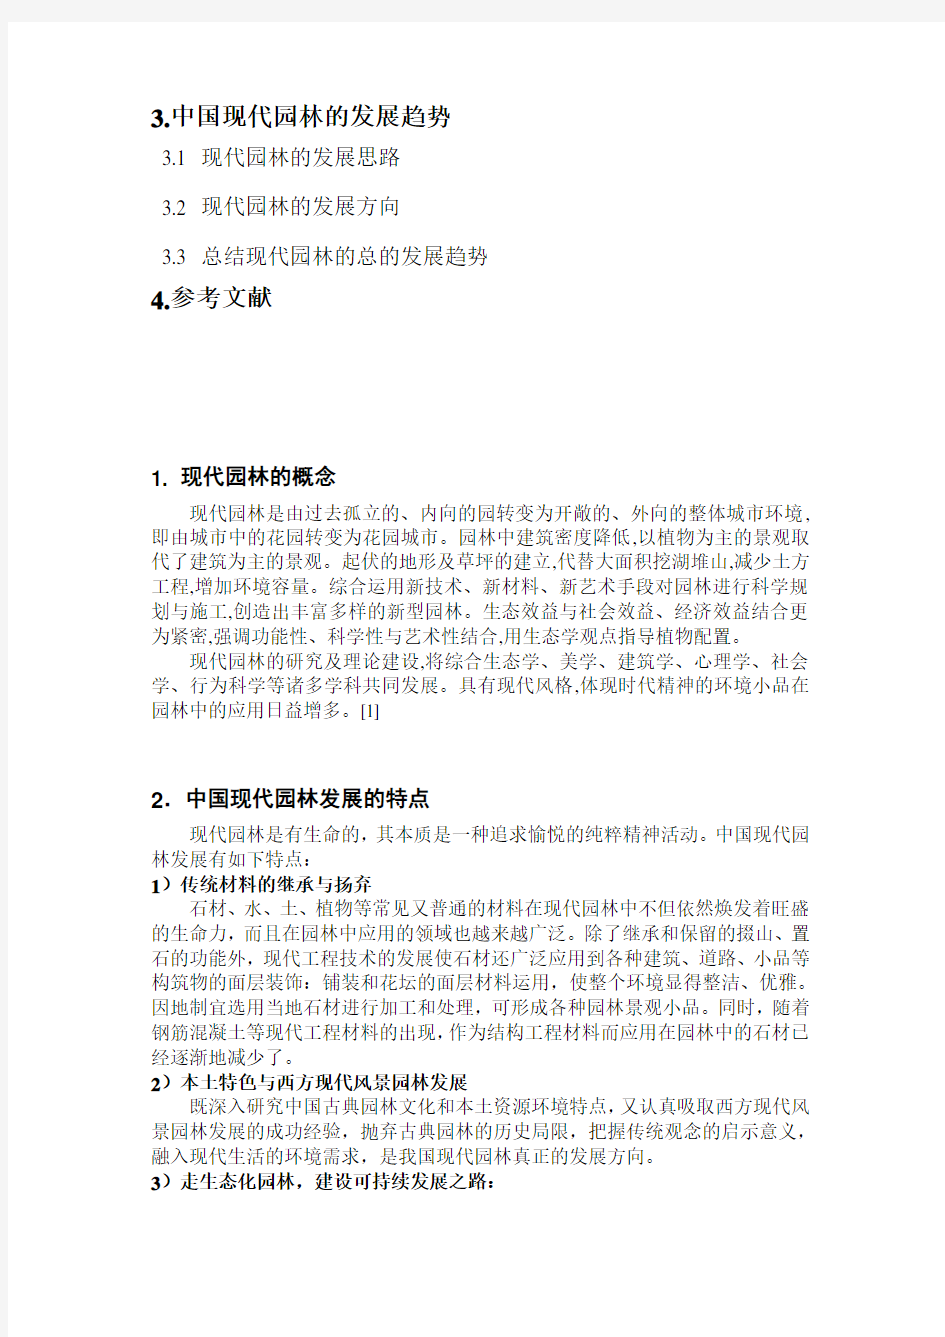 【完整版毕业论文】中国现代园林的发展趋势—园林论文资料